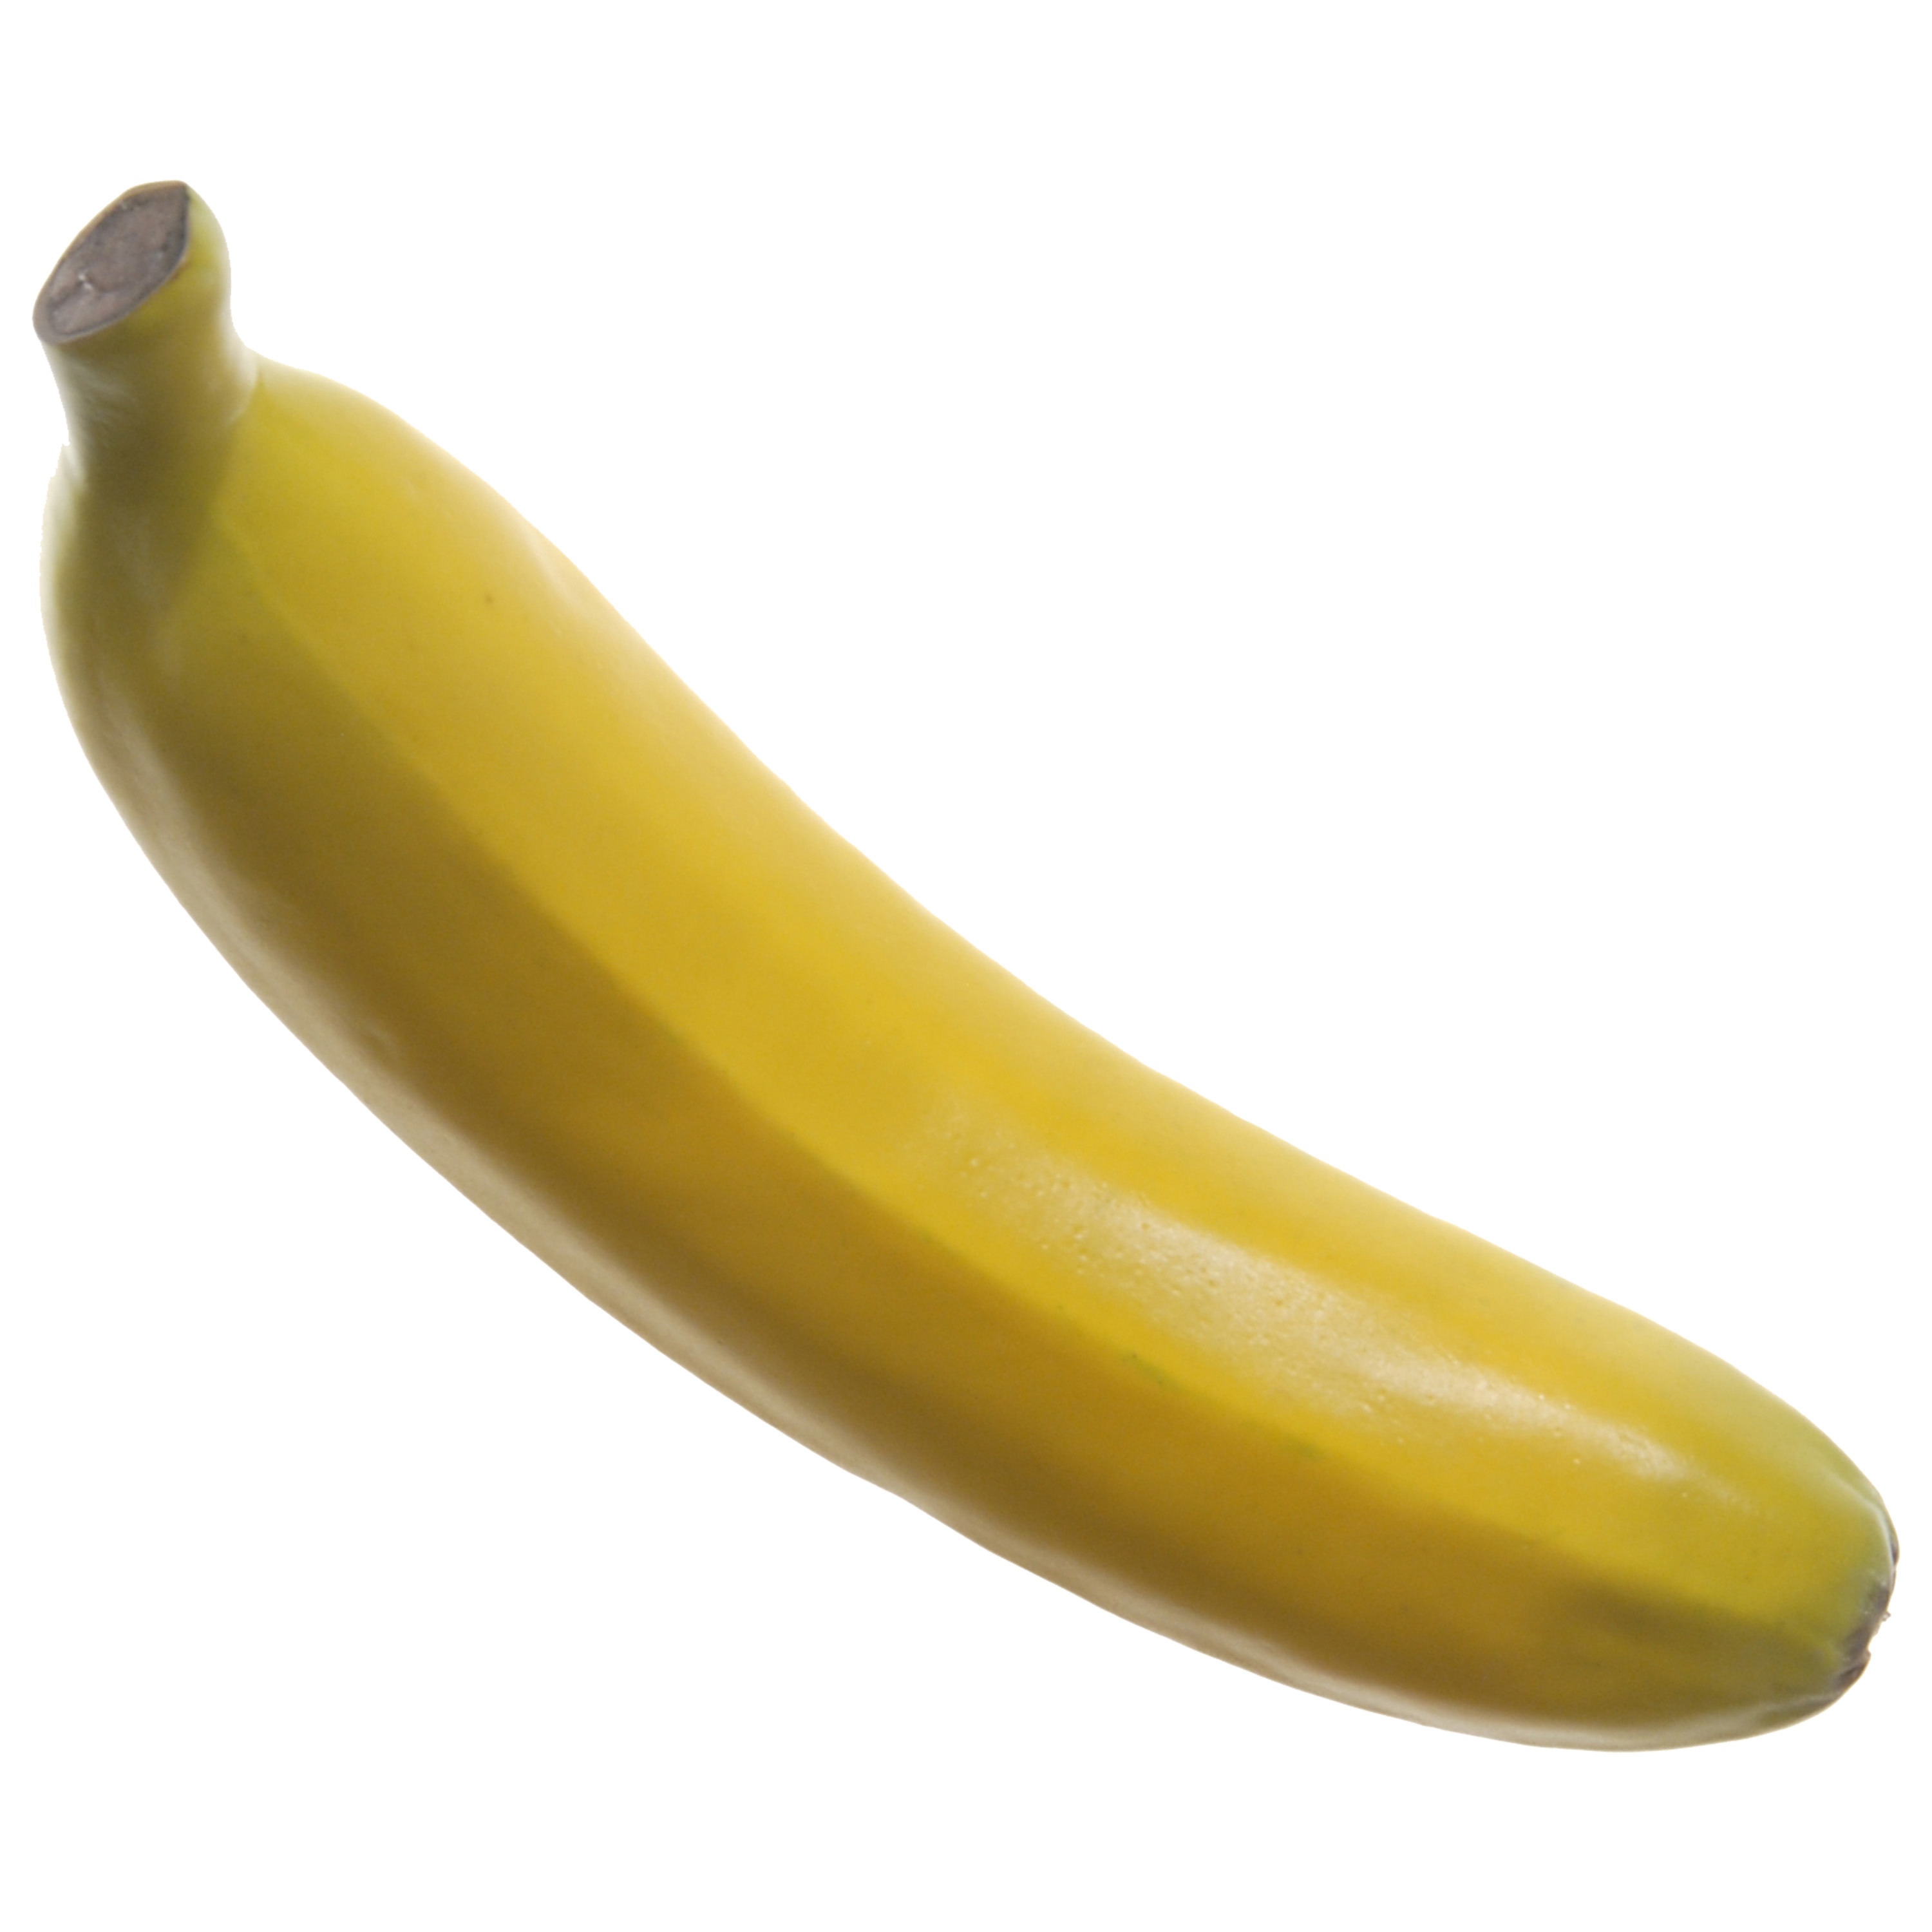 Kunstfruit decofruit - banaan/bananen - ongeveer 18 cm - geel -